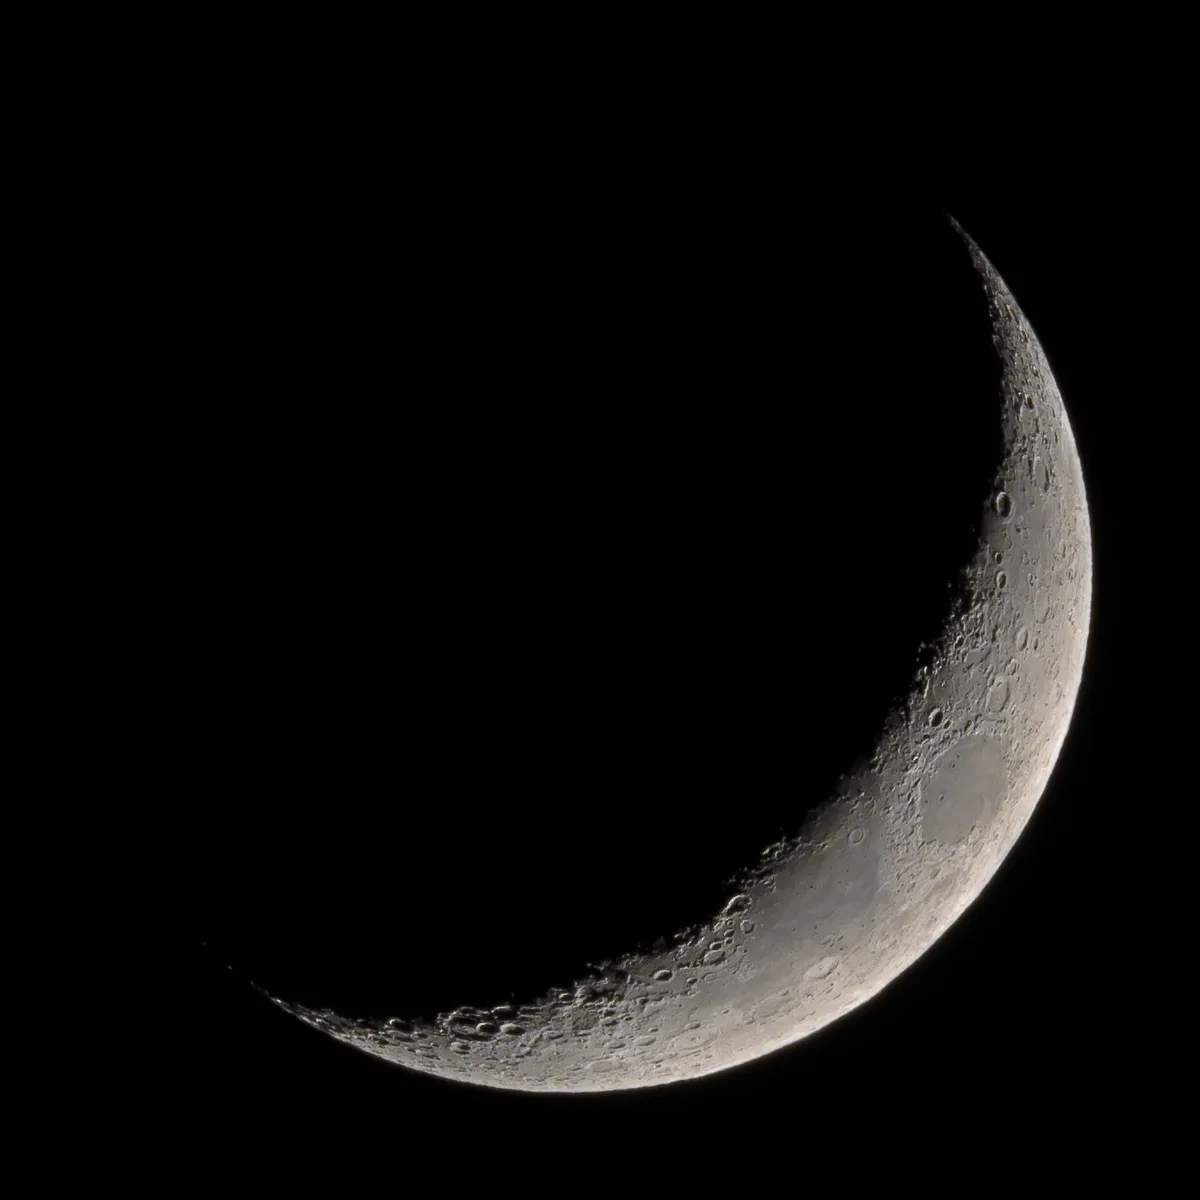 Crescent Moon by Tom Howard, Crawley, Sussex. Equipment: Nikon D7000 DSLR, TS-Optics 65mm quad refractor, Nikon TC-14E teleconverter.